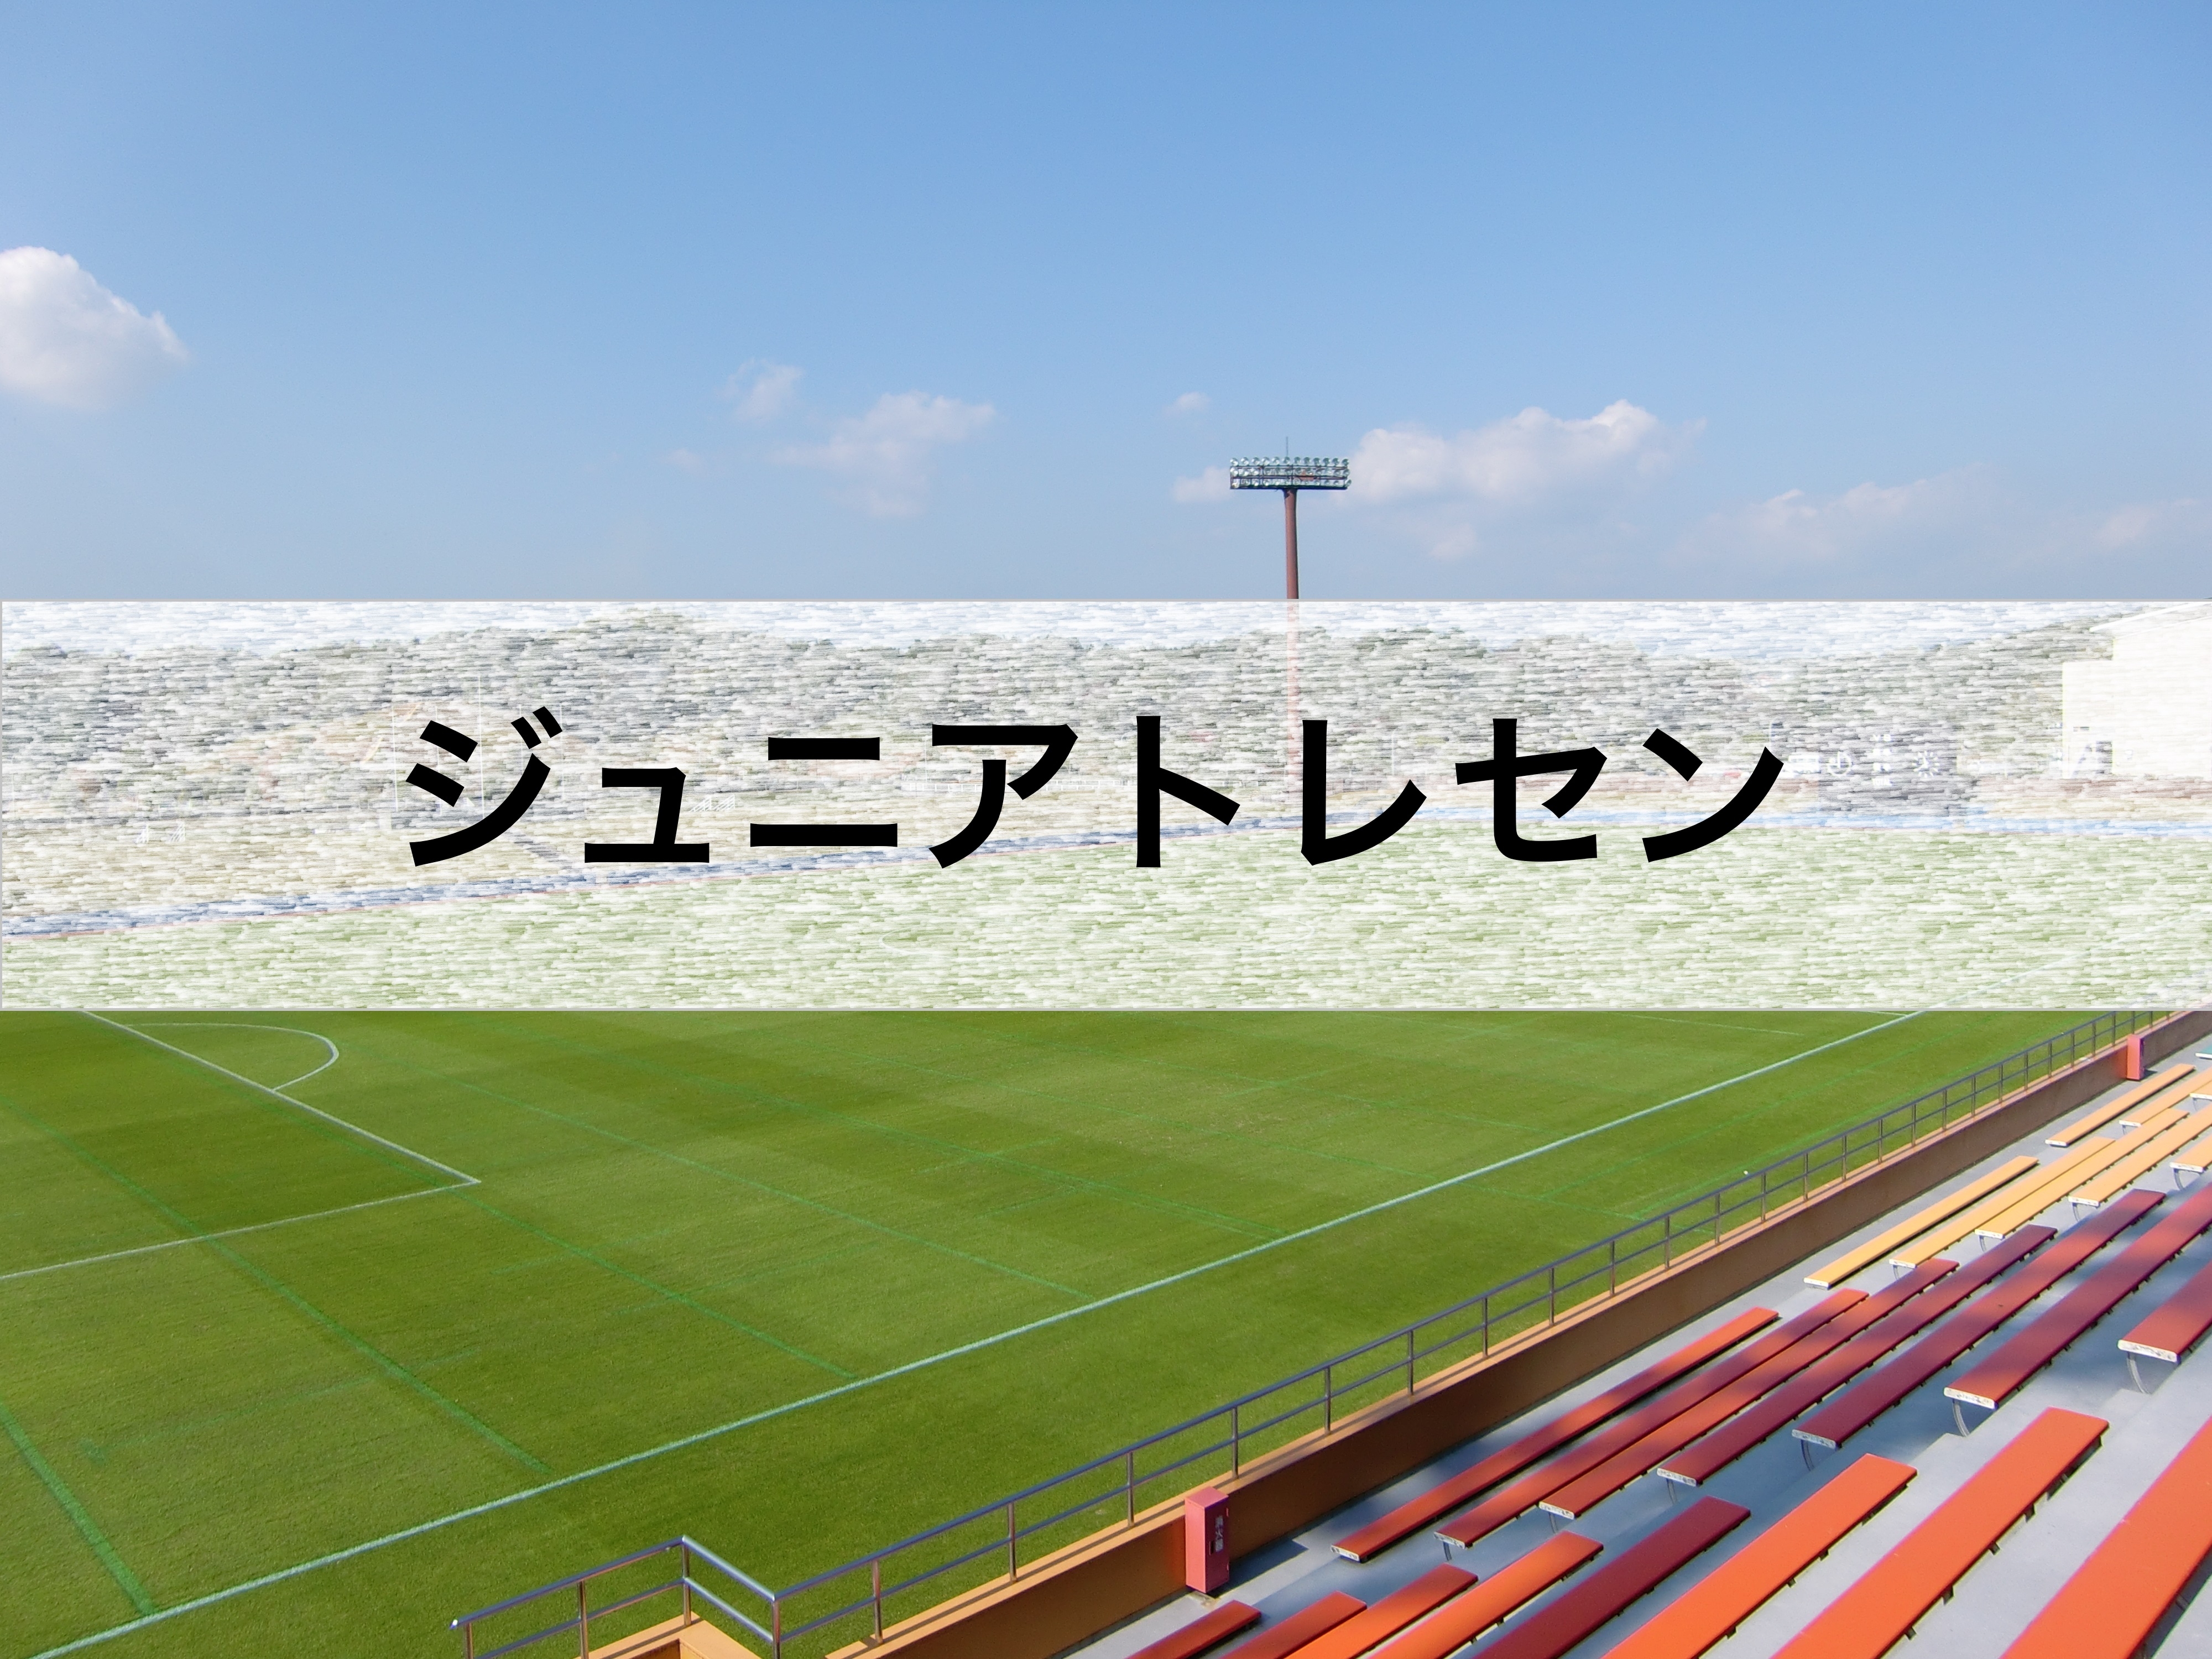 【2021年度】三重県サッカー協会 ジュニアトレセン活動指針&活動スケジュール